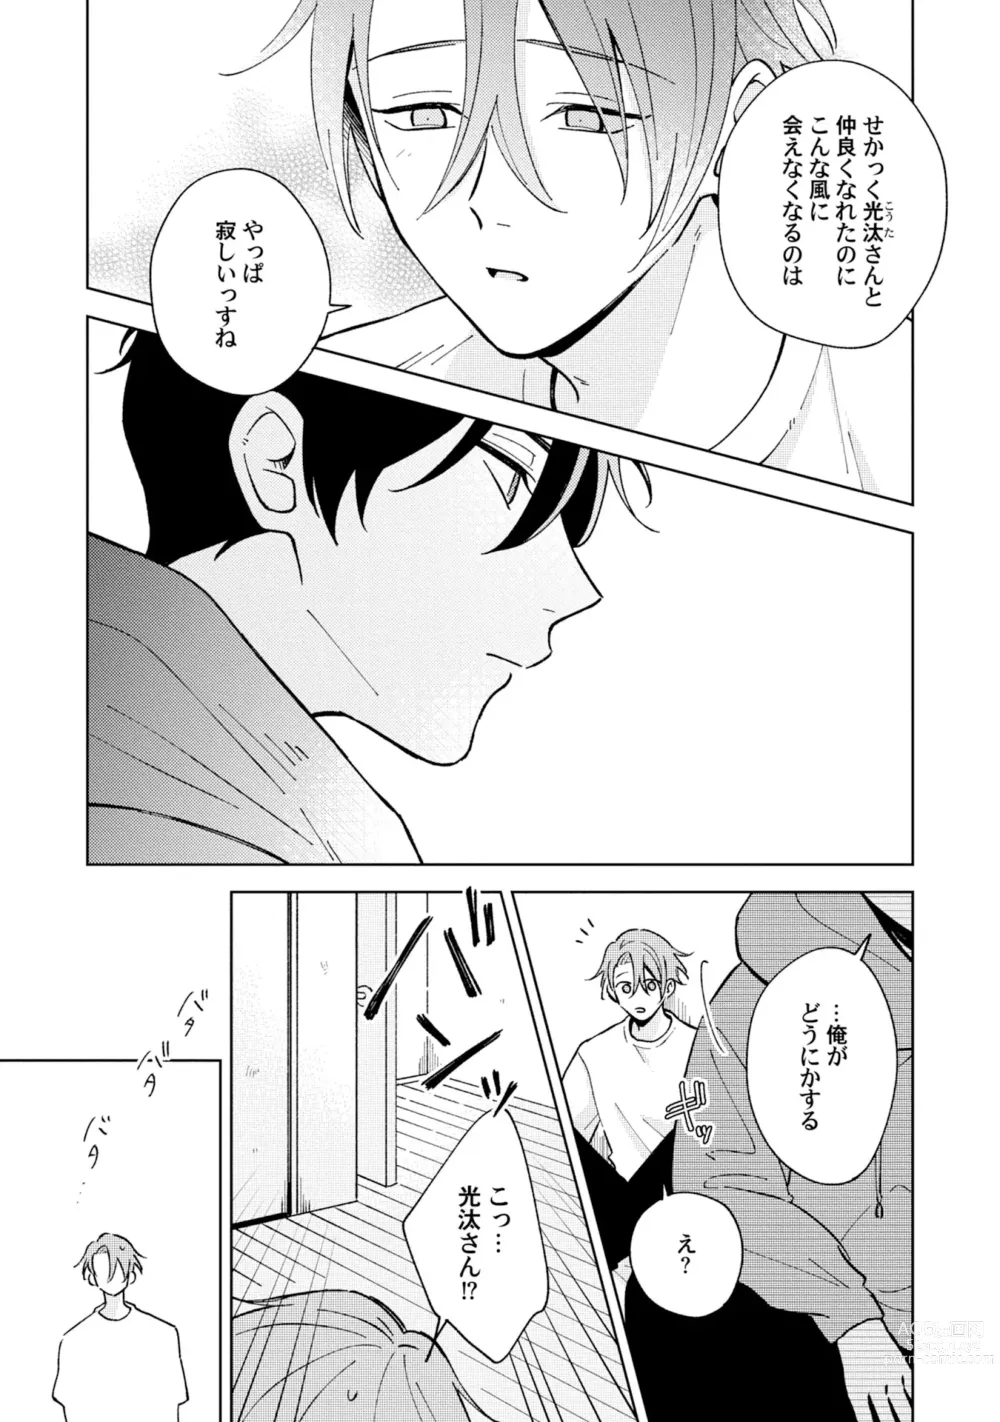 Page 7 of manga Toho 3-byou no Trouble Love Room 5